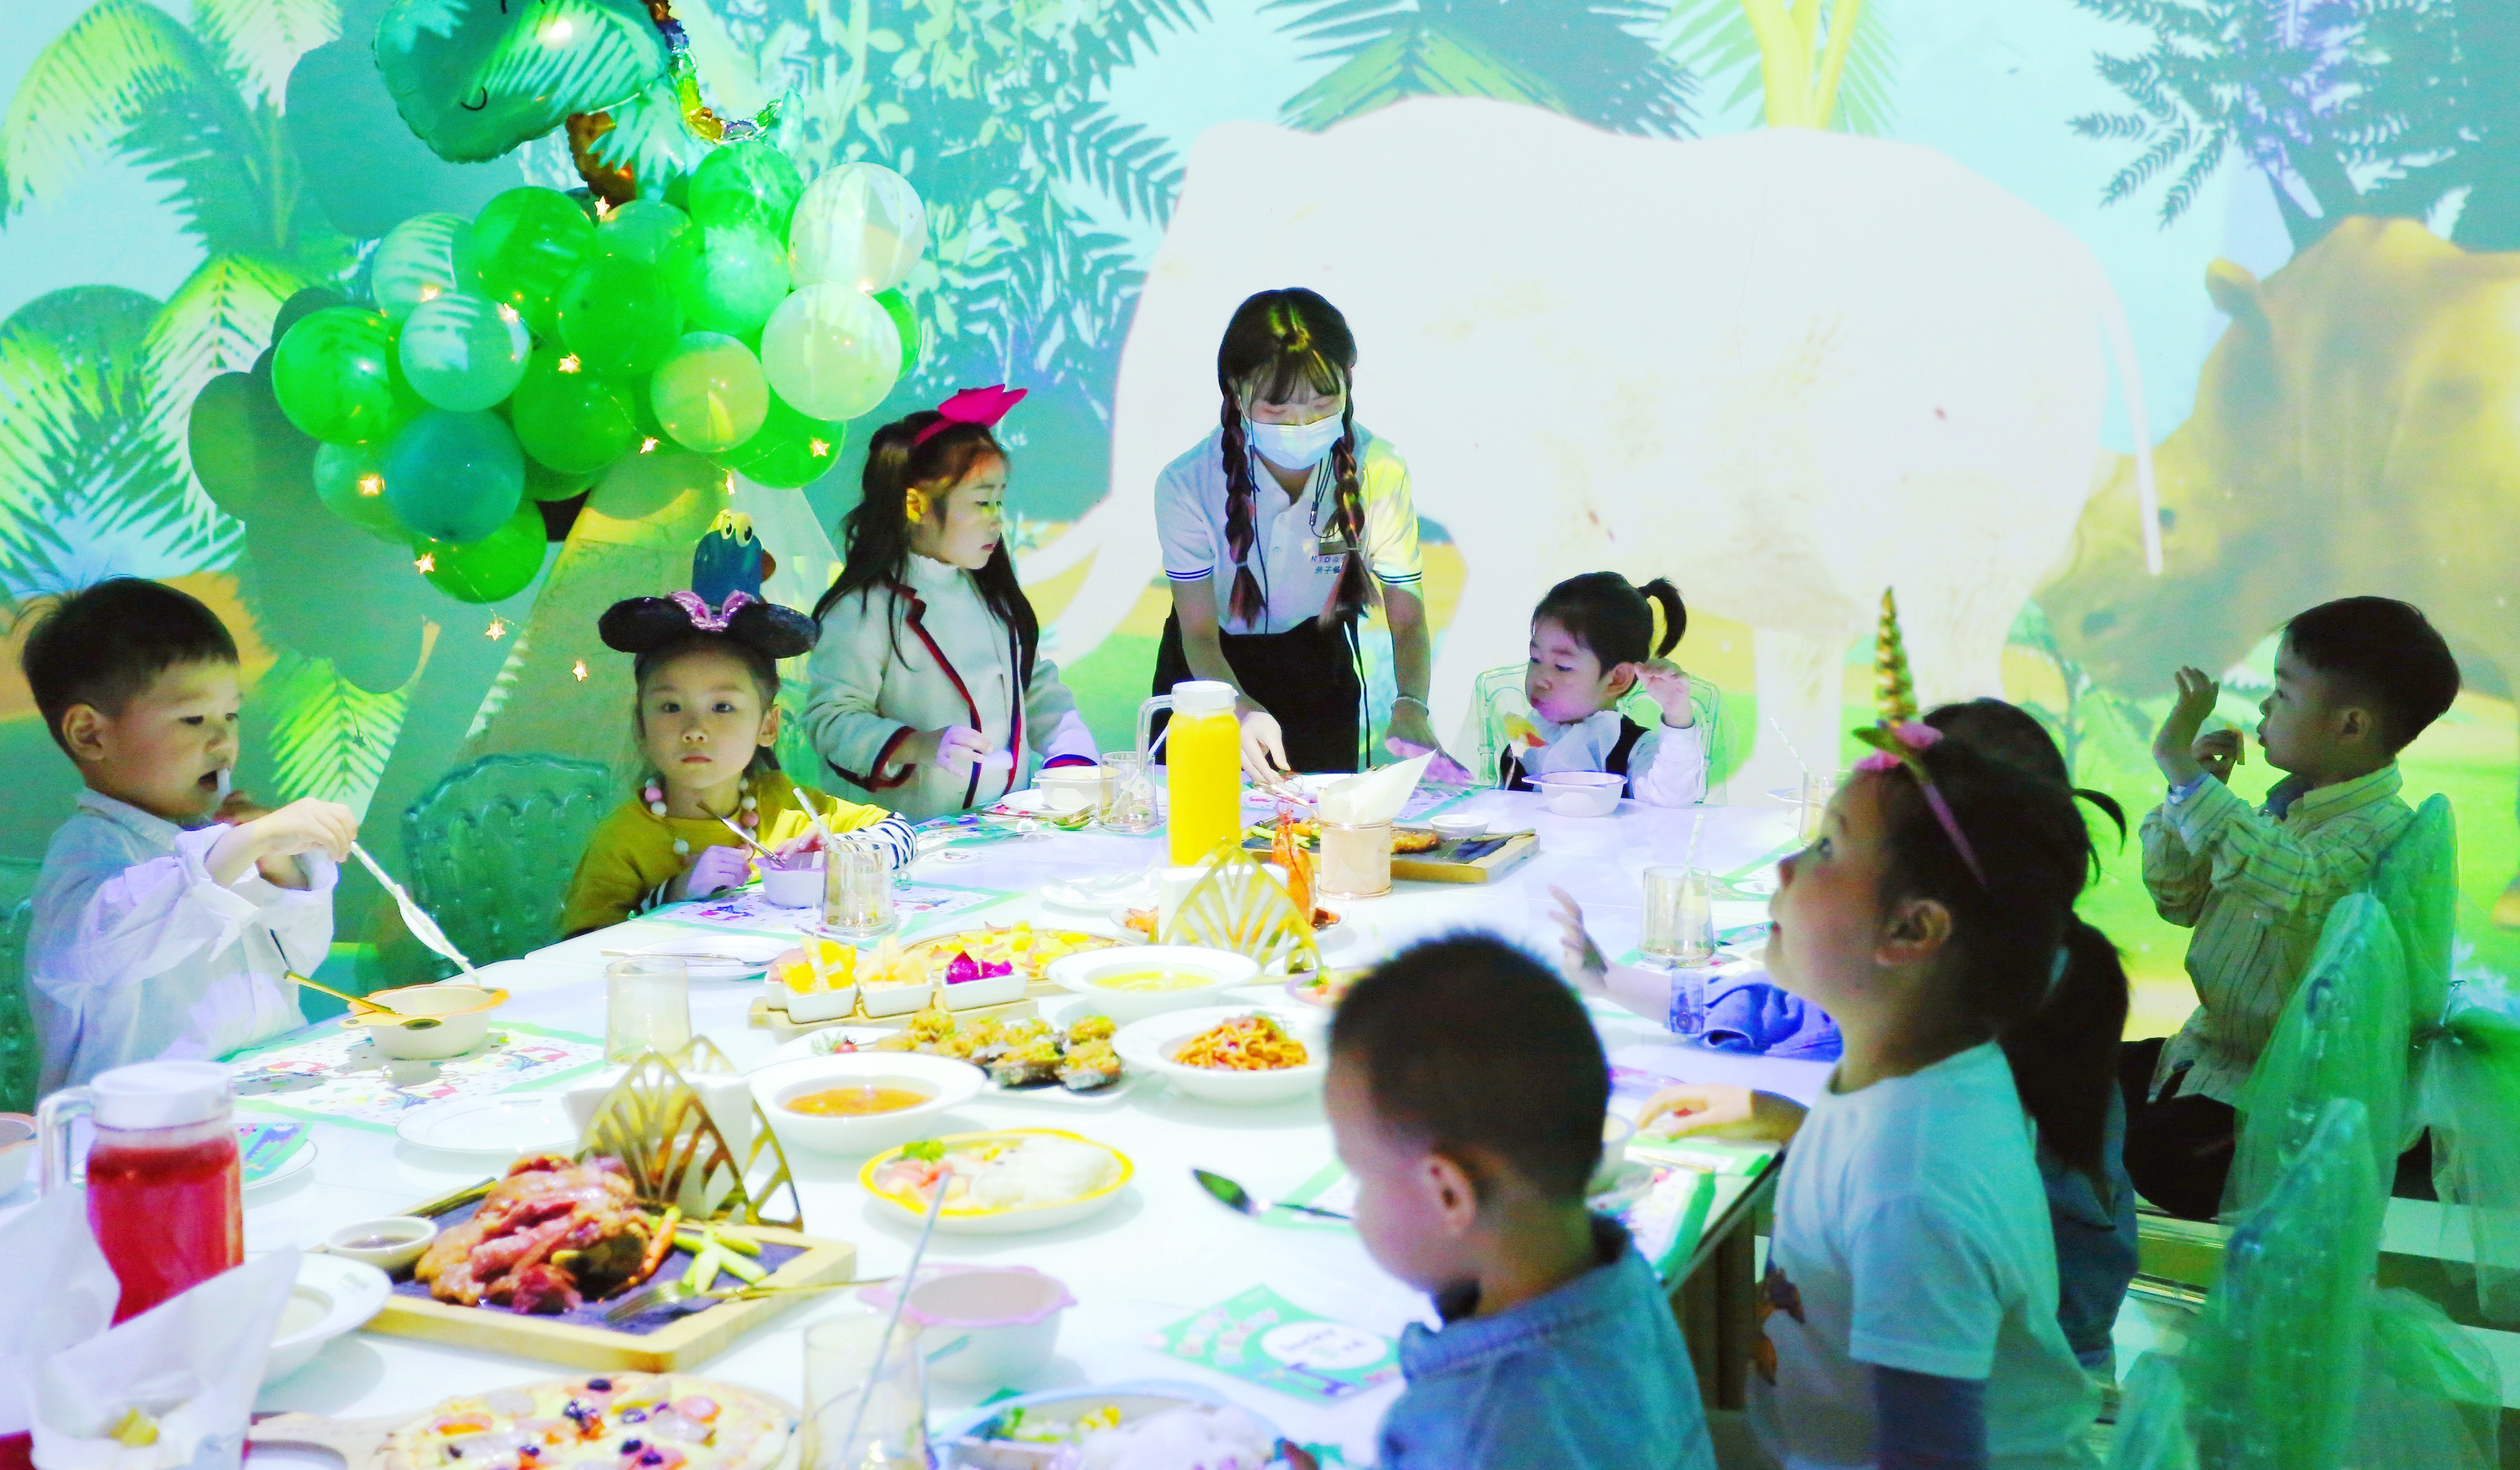 专属的布置、特定的场景、轻松的氛围，选择一个亲子餐厅给小孩过生日已得到众多家长的青睐。